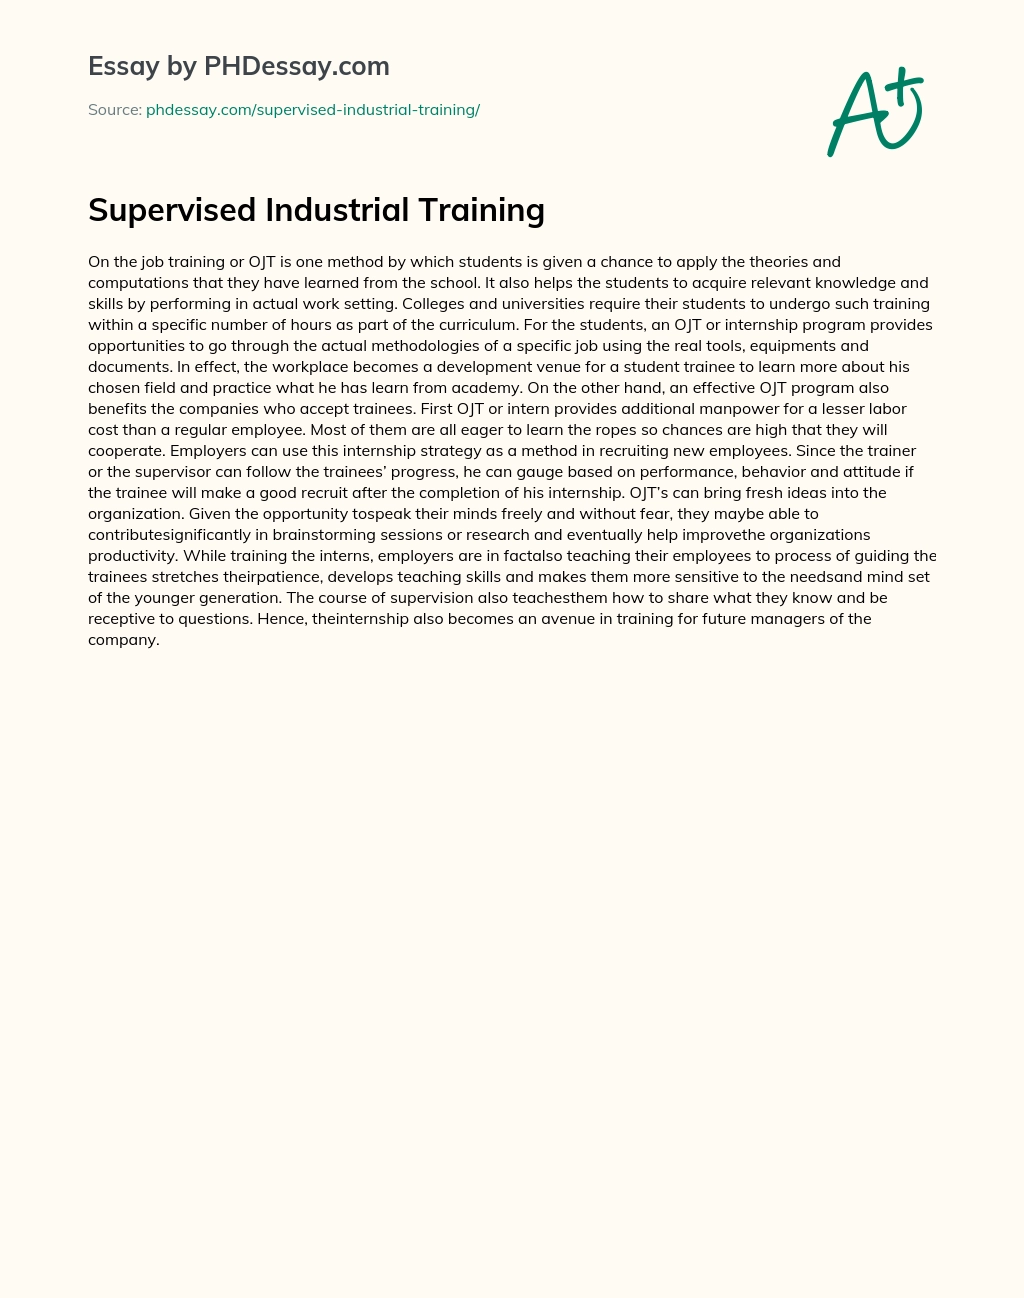 Supervised Industrial Training essay